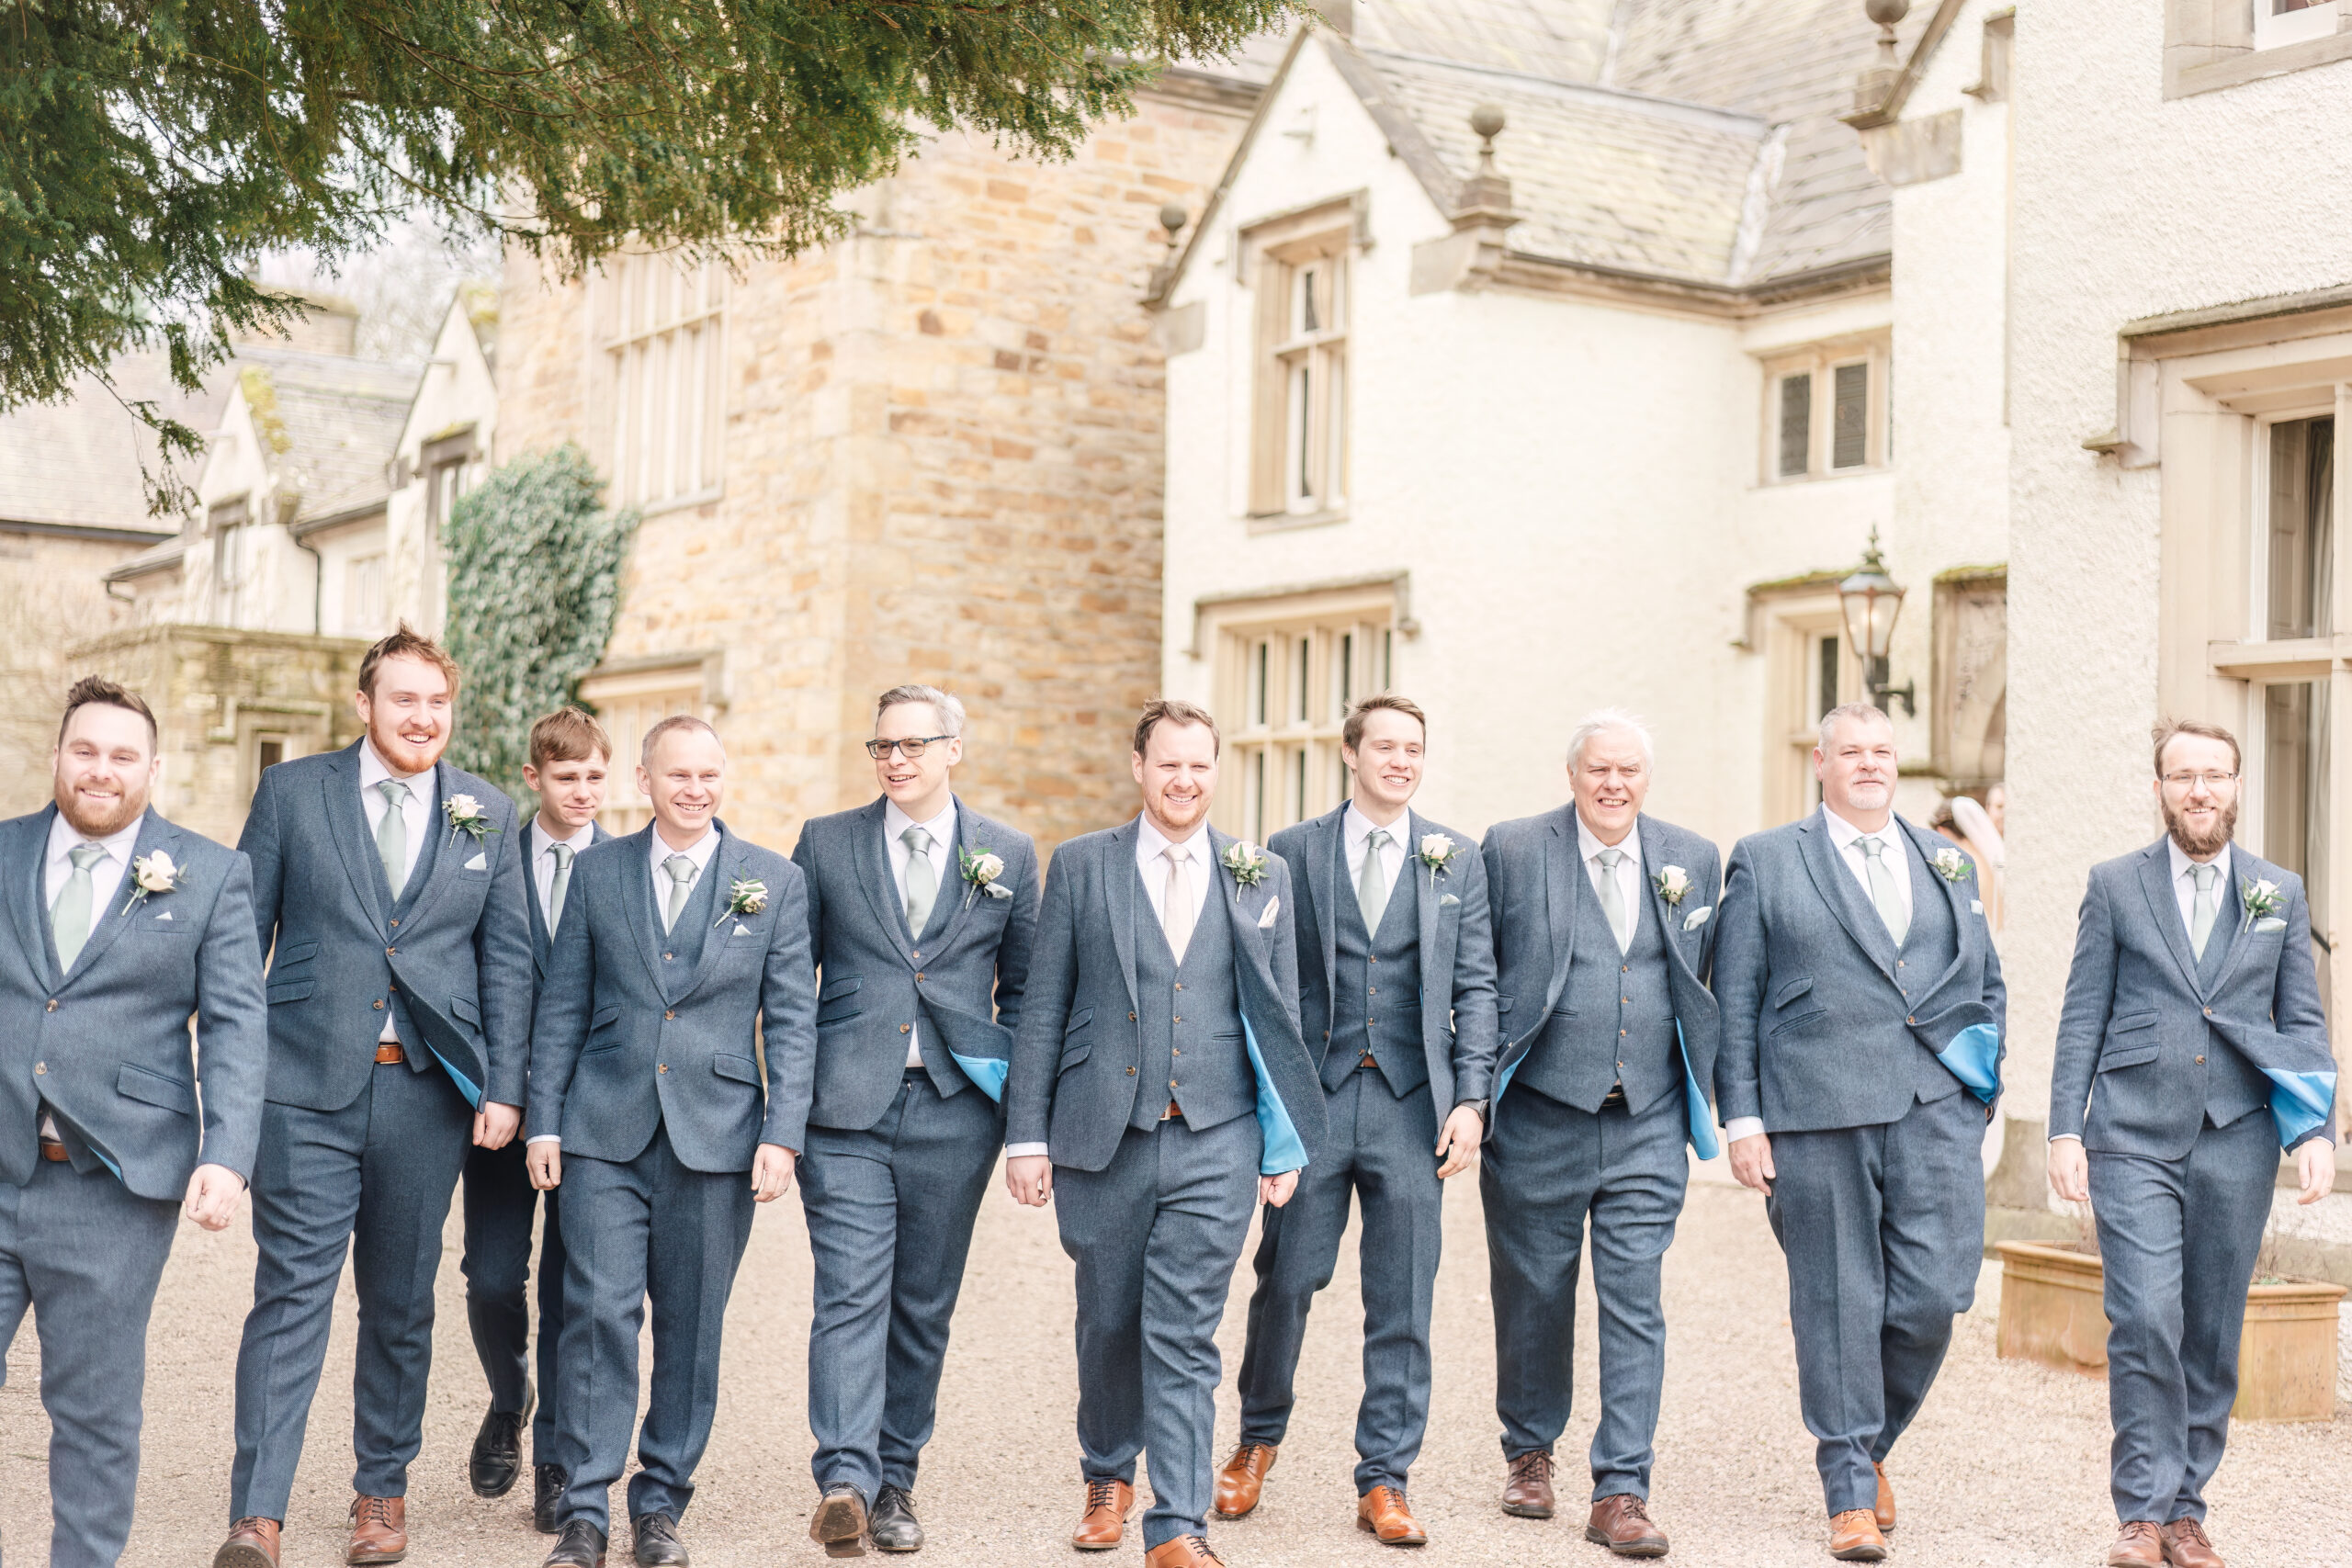 men walking in suits